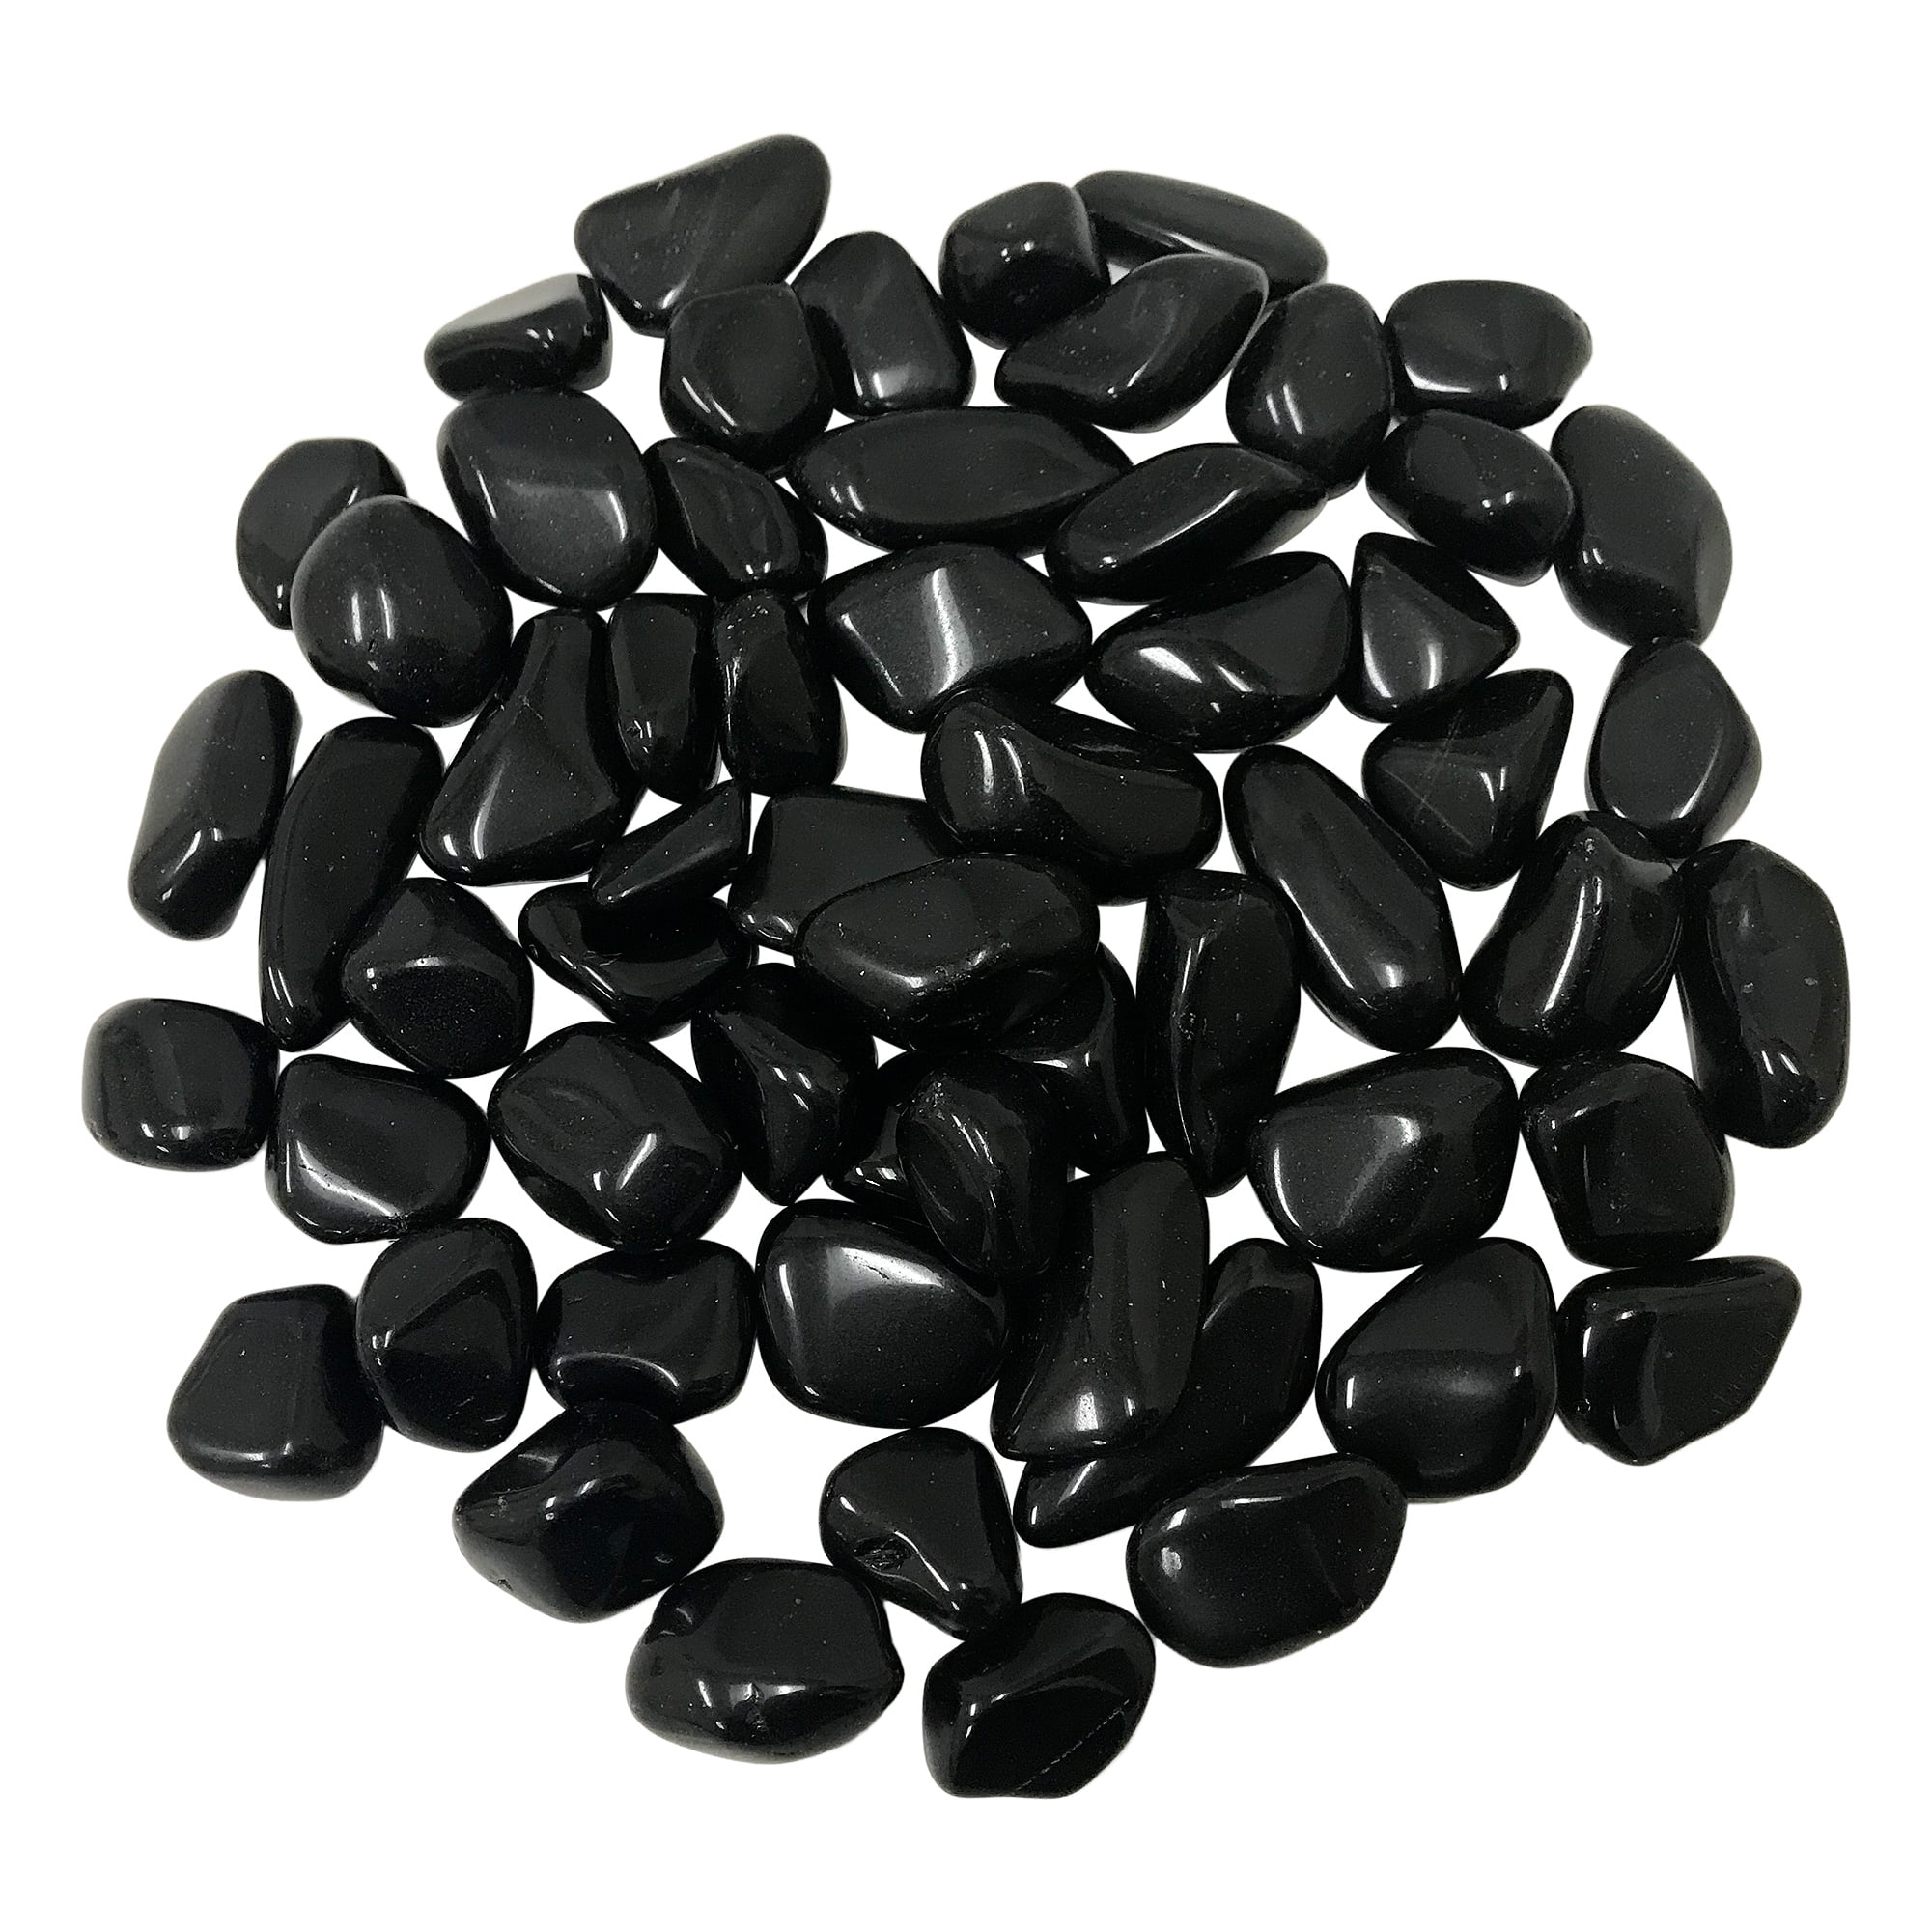 Crystal Healing Gemstone Reiki Tumble 2 oz Snowflake Obsidian Tumbled Stone 